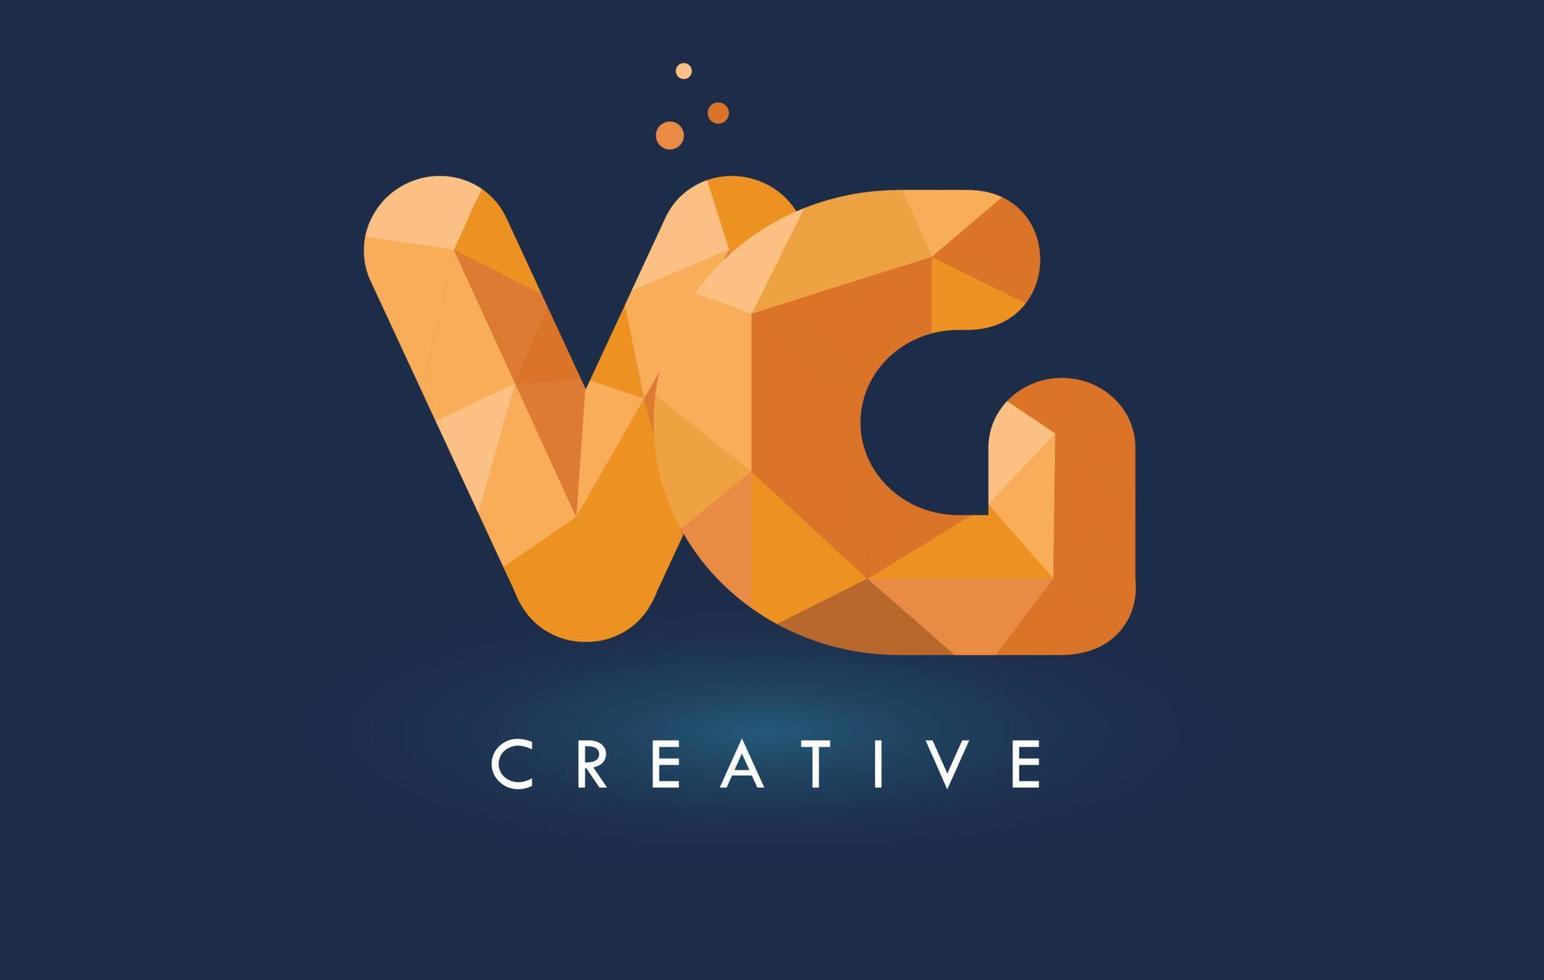 carta vg com logotipo de triângulos de origami. design criativo origami amarelo laranja. vetor